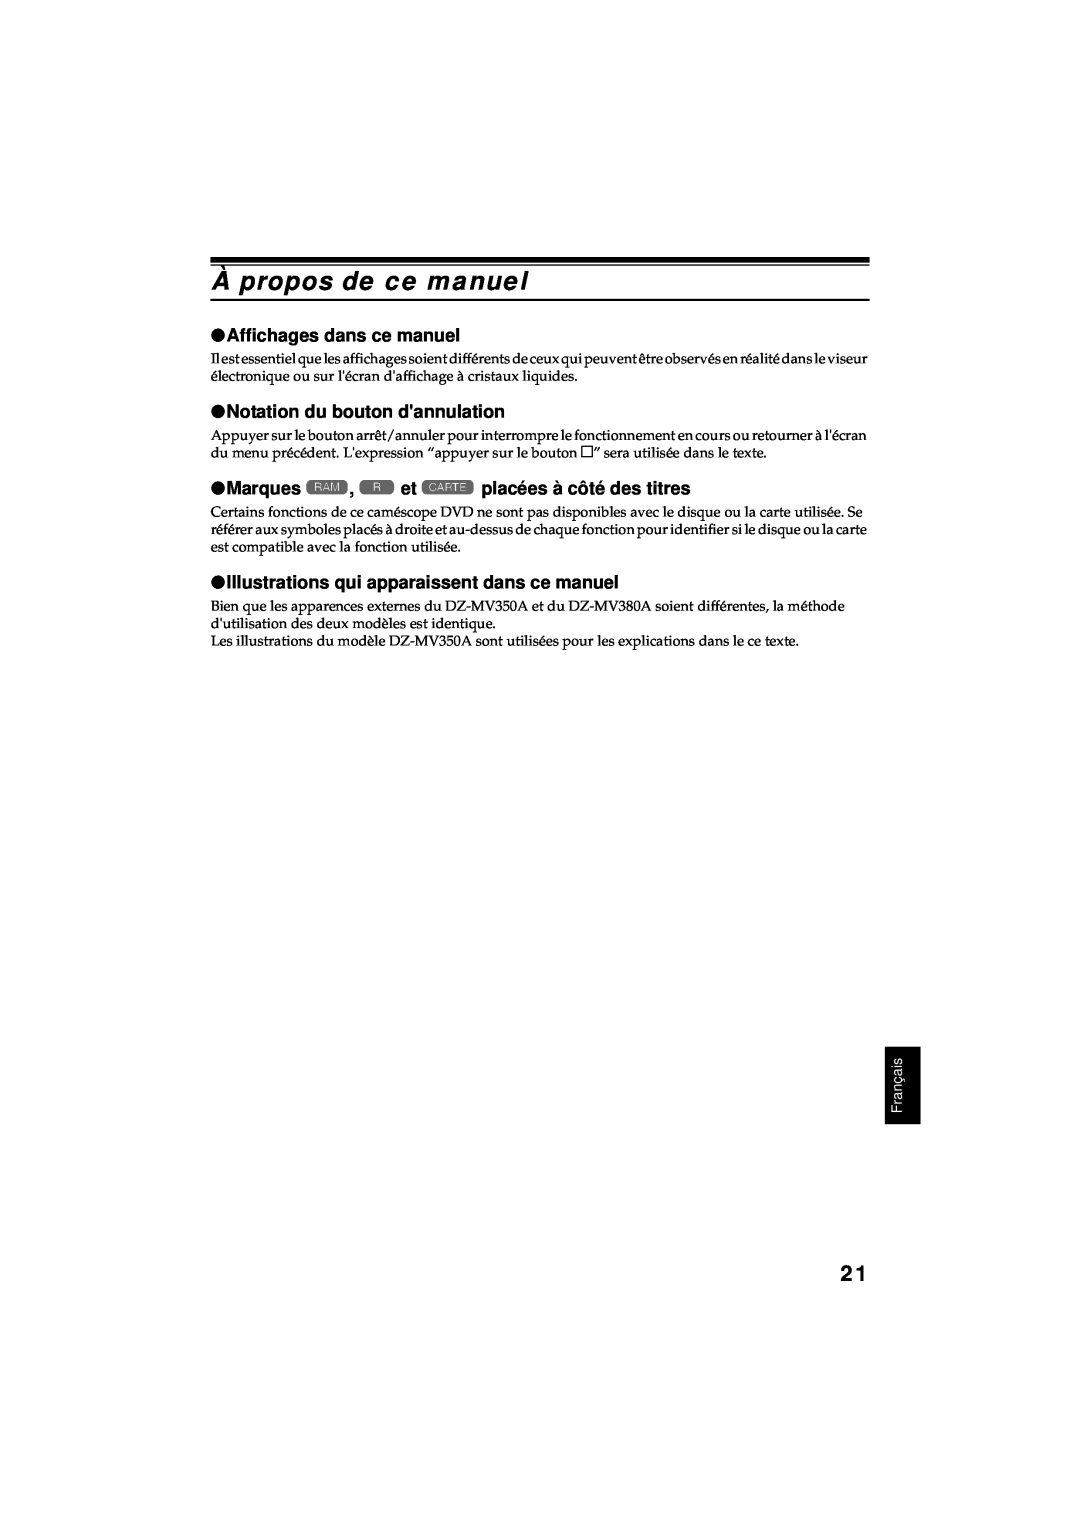 Hitachi DZ-MV380A manual À propos de ce manuel, Affichages dans ce manuel, Notation du bouton dannulation, Français 